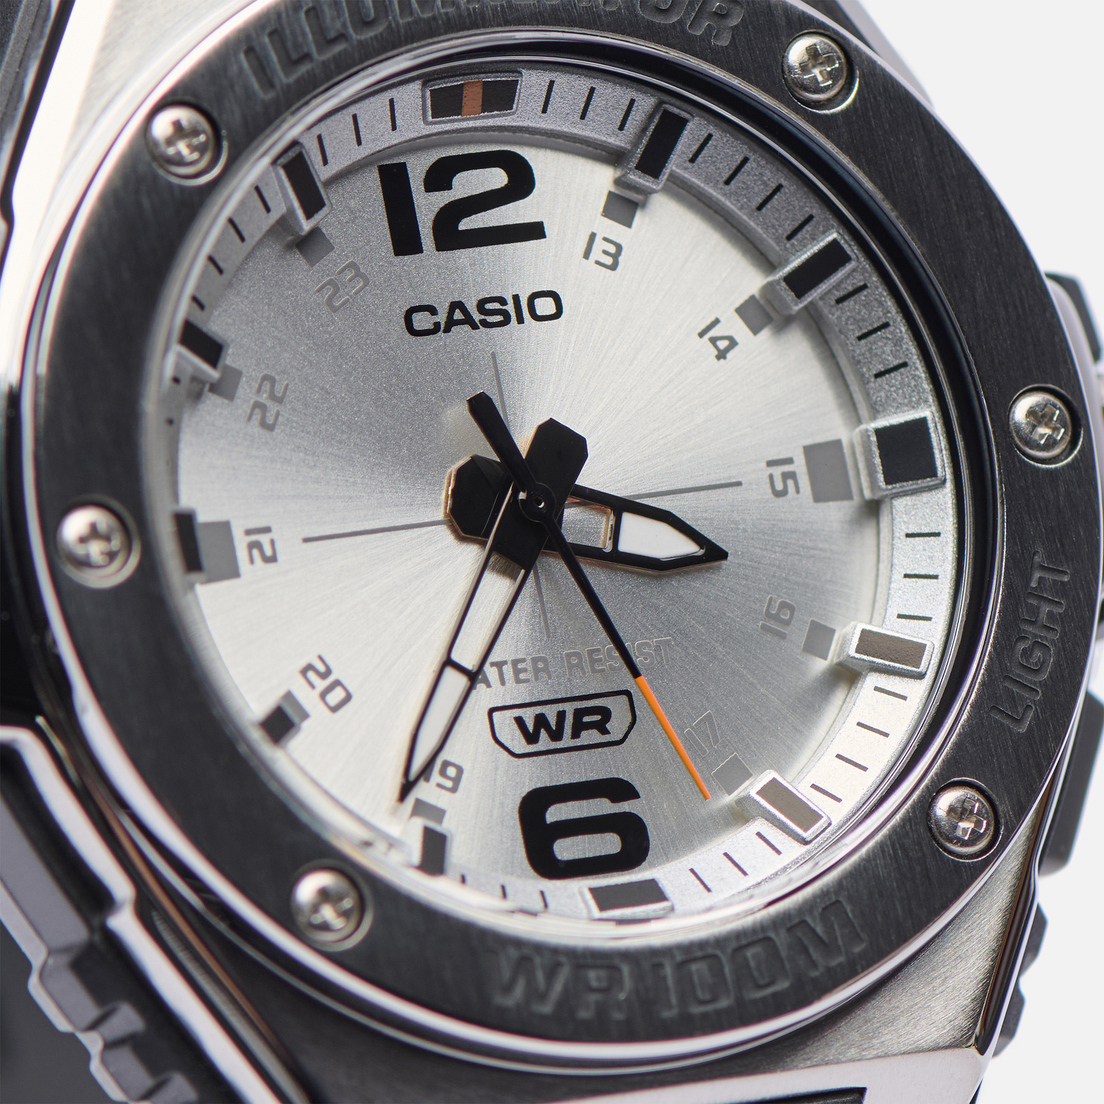 CASIO Наручные часы Collection MWA-100H-7A